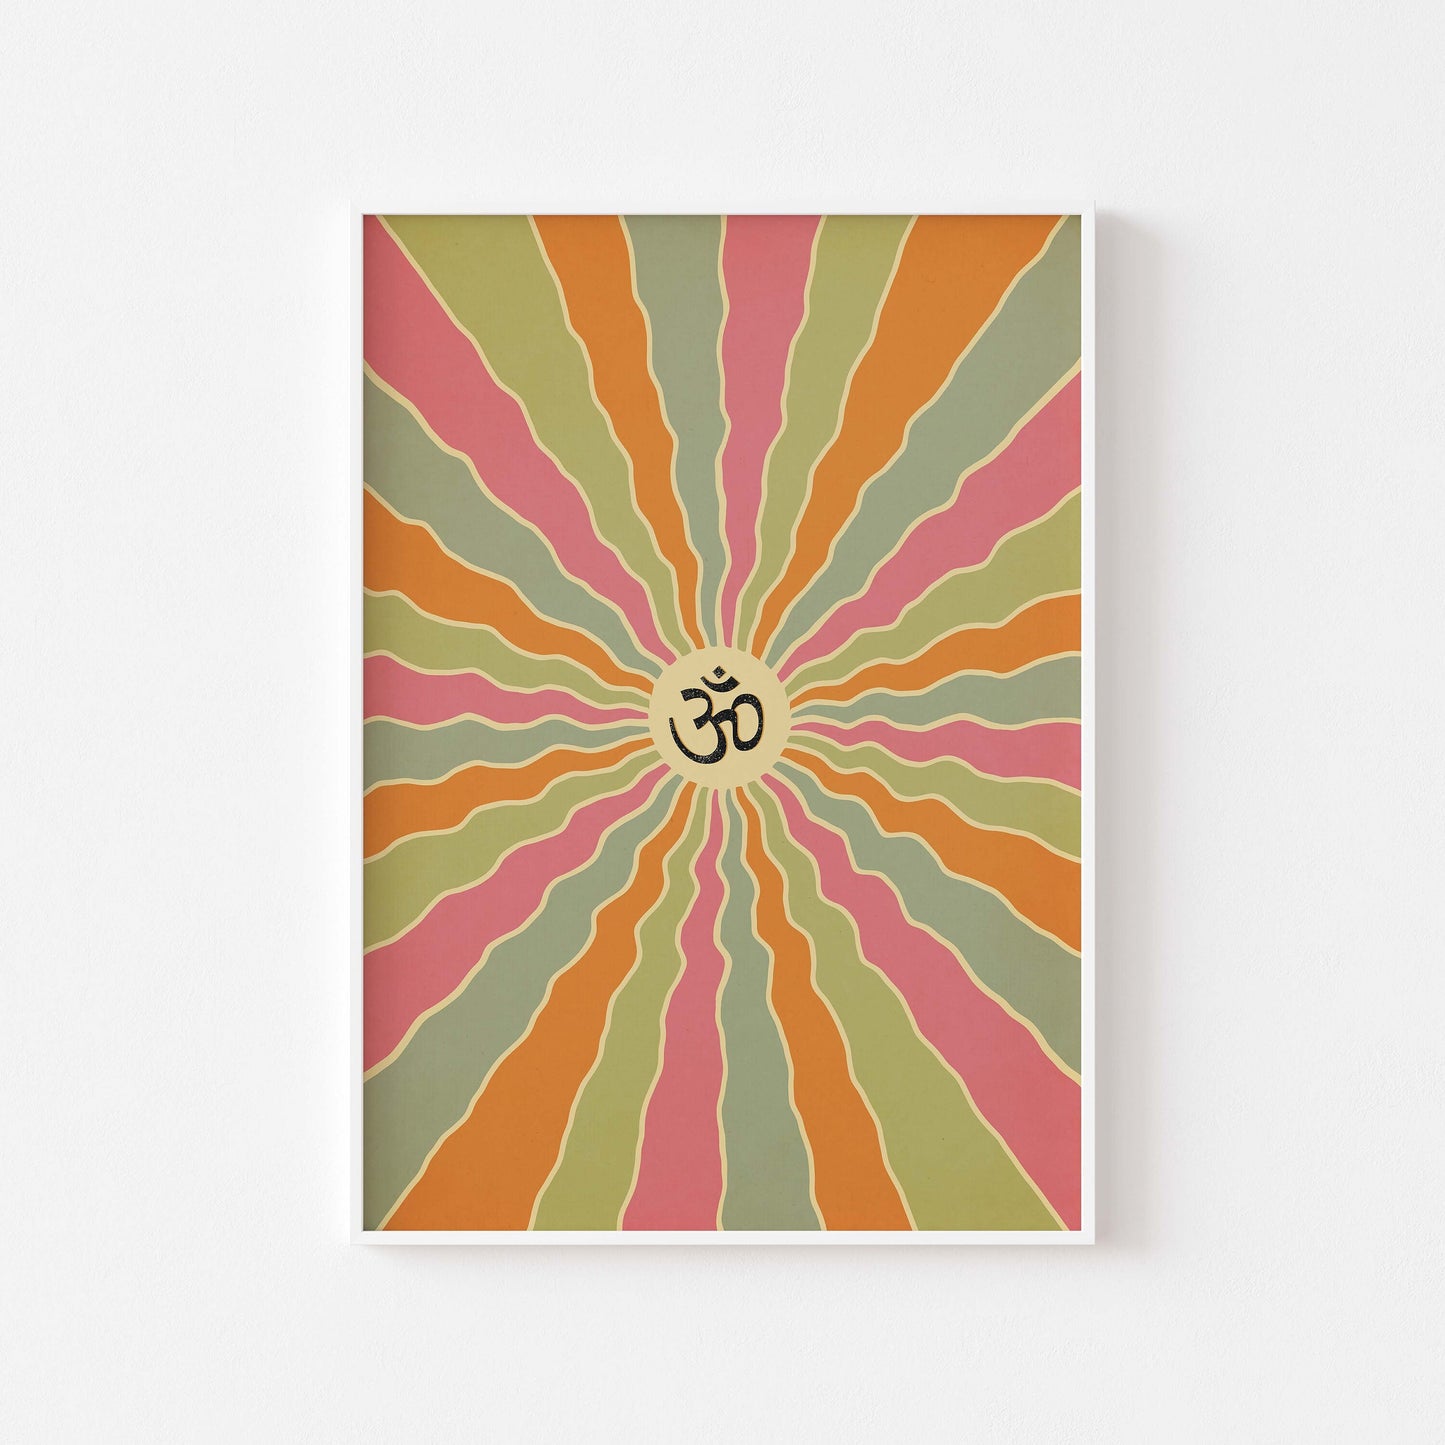 Om in sanskrit on a colorful spiral design poster in white frame mockup